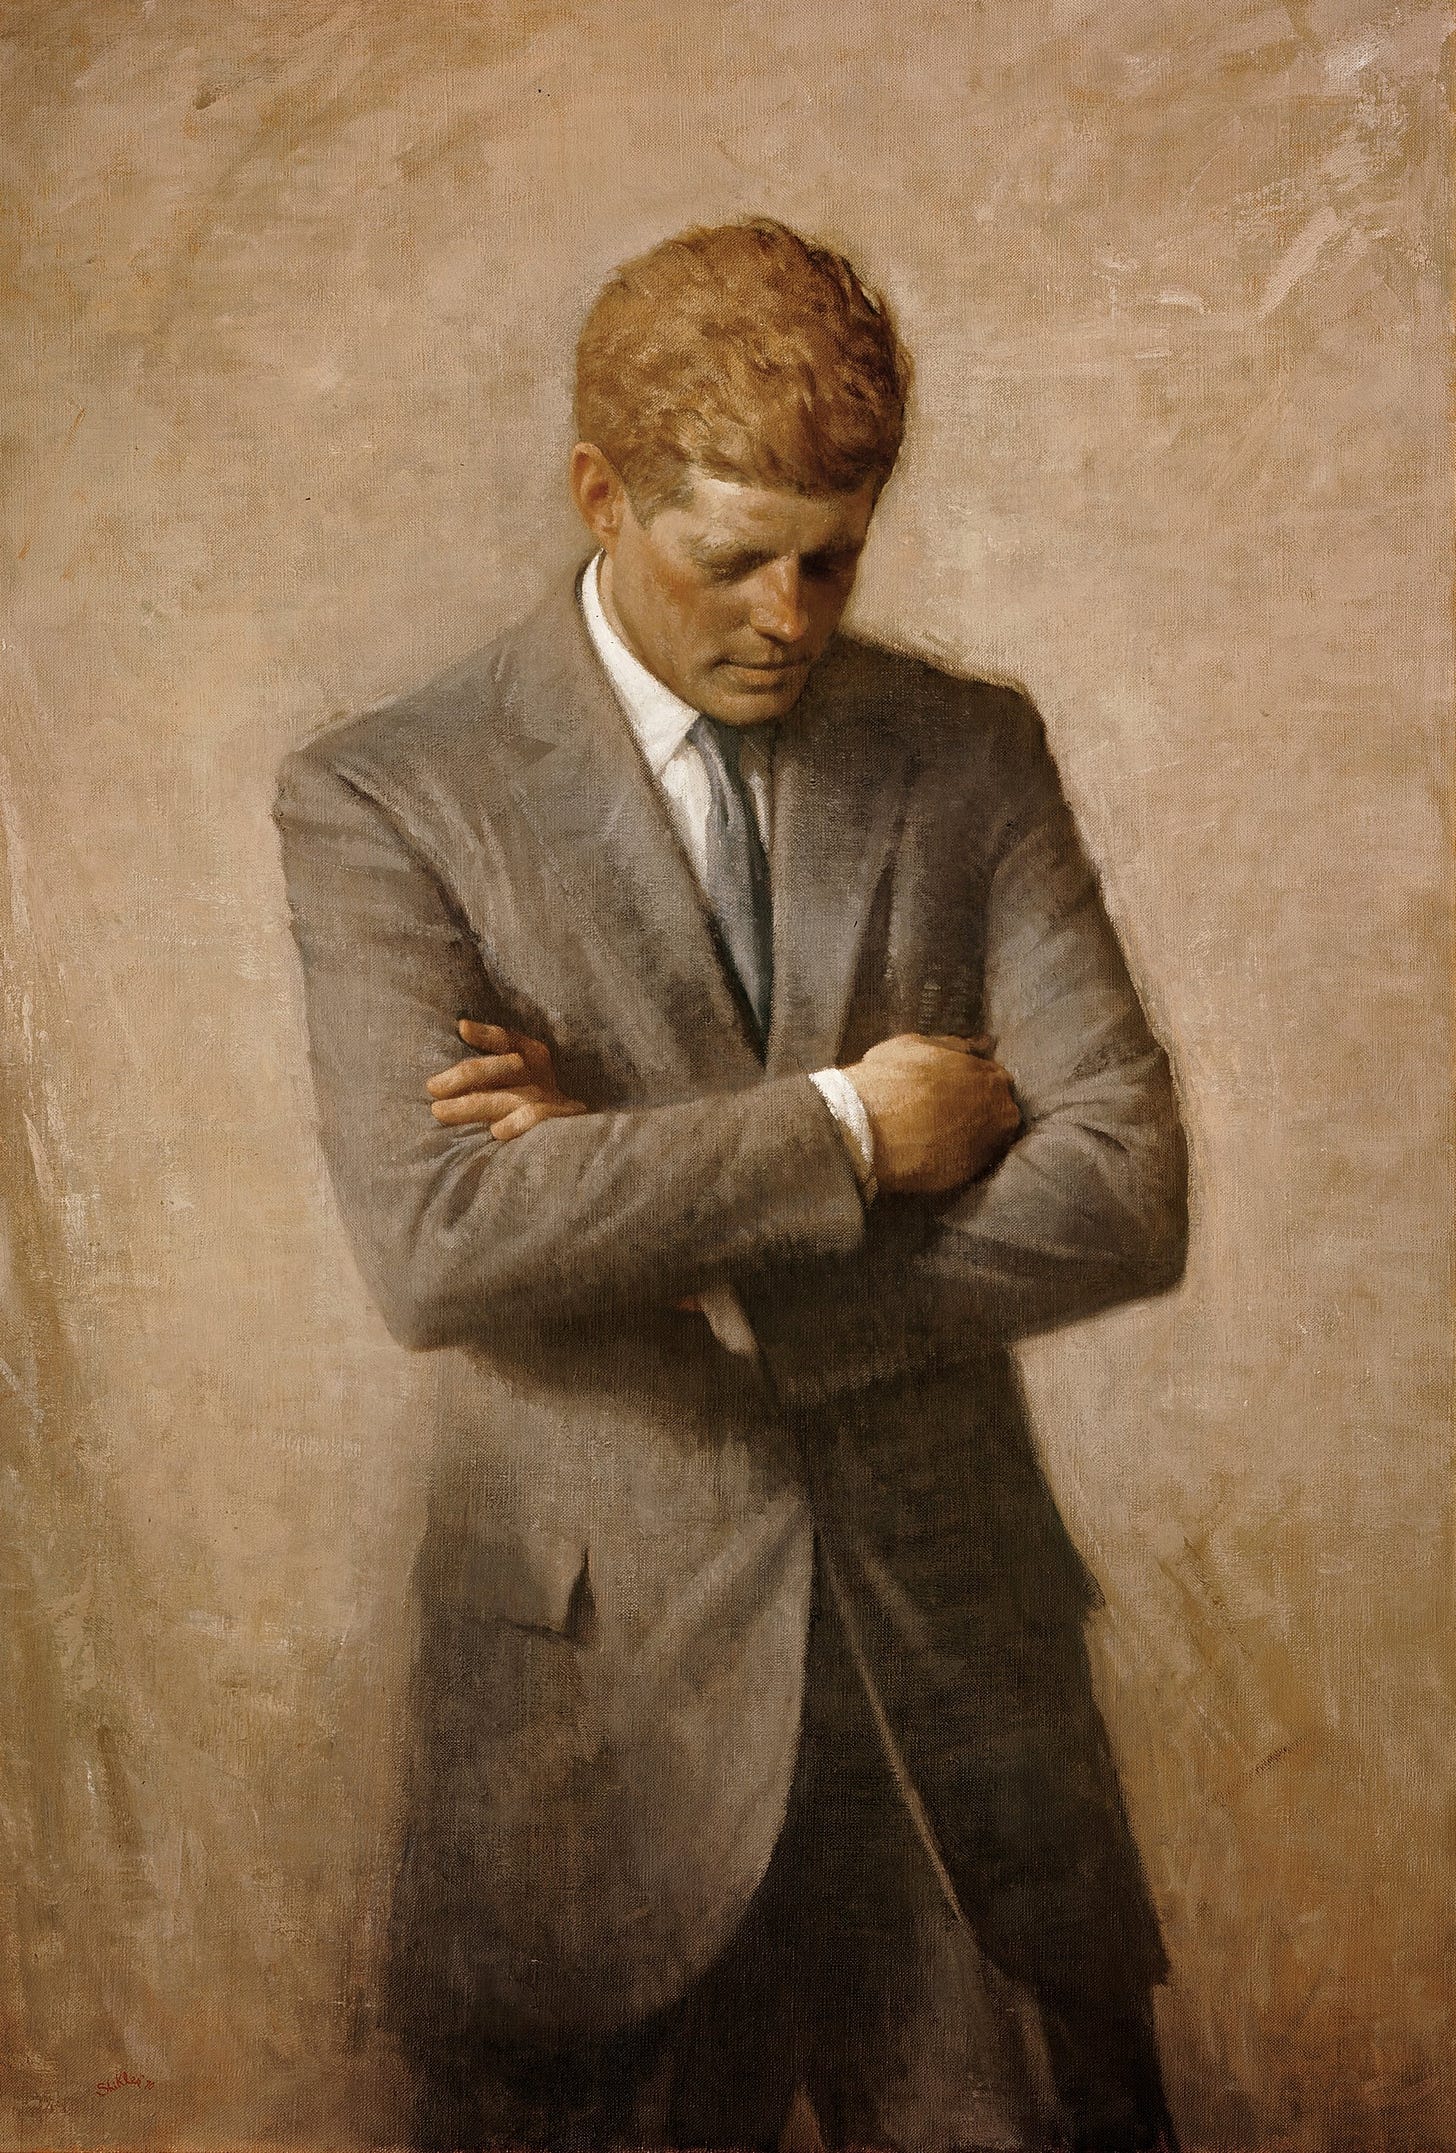 File:John F Kennedy Official Portrait.jpg - Wikipedia